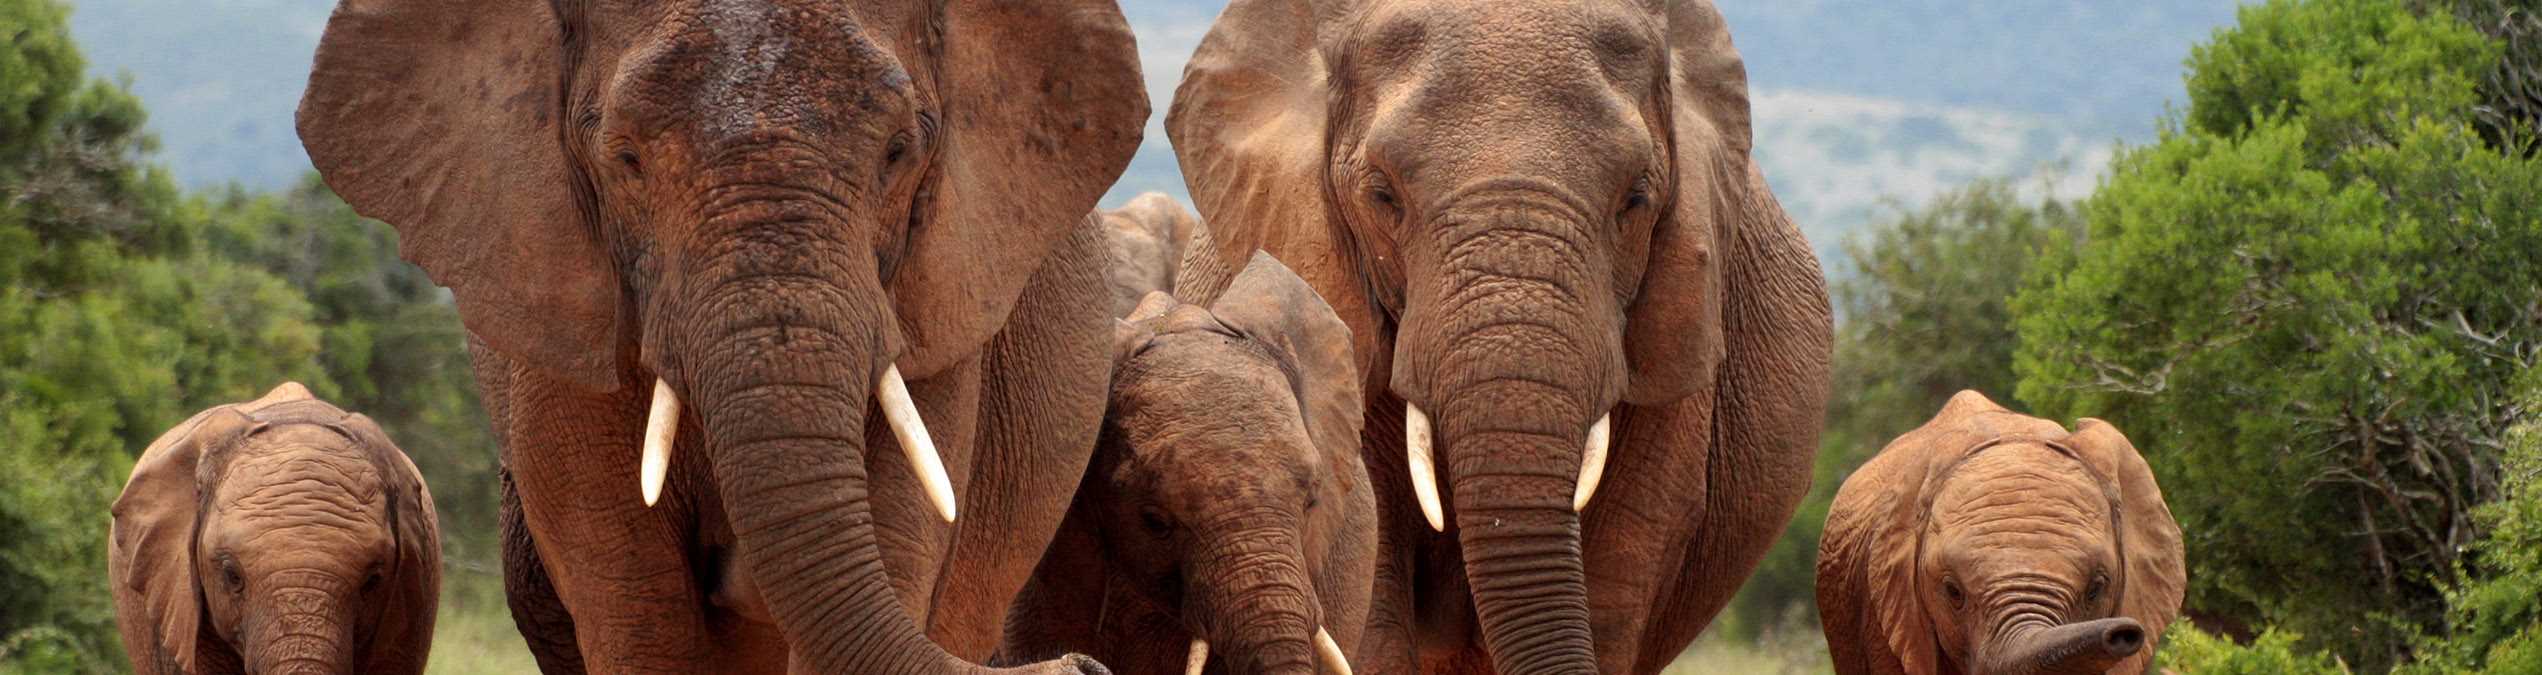 Safari Club - South_Africa_Eastern_Cape_Addo_Elephant_Park